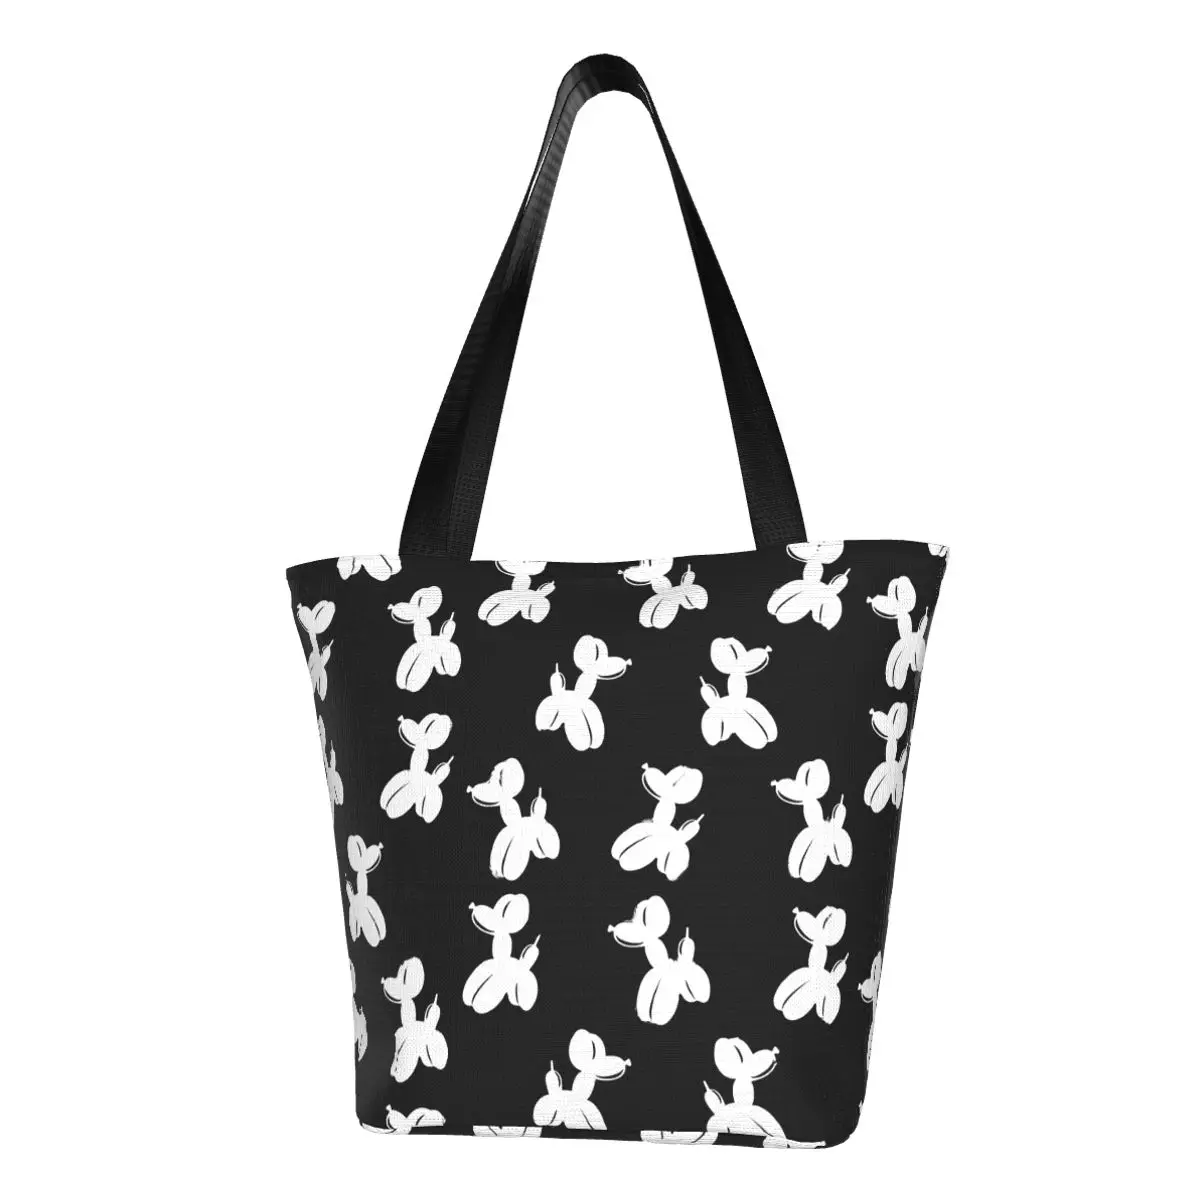 

Белая сумка-шоппер с воздушным шаром для собак, сумки для путешествий с животным принтом, женская сумка на плечо с принтом, модная сумка-тоут из полиэстера